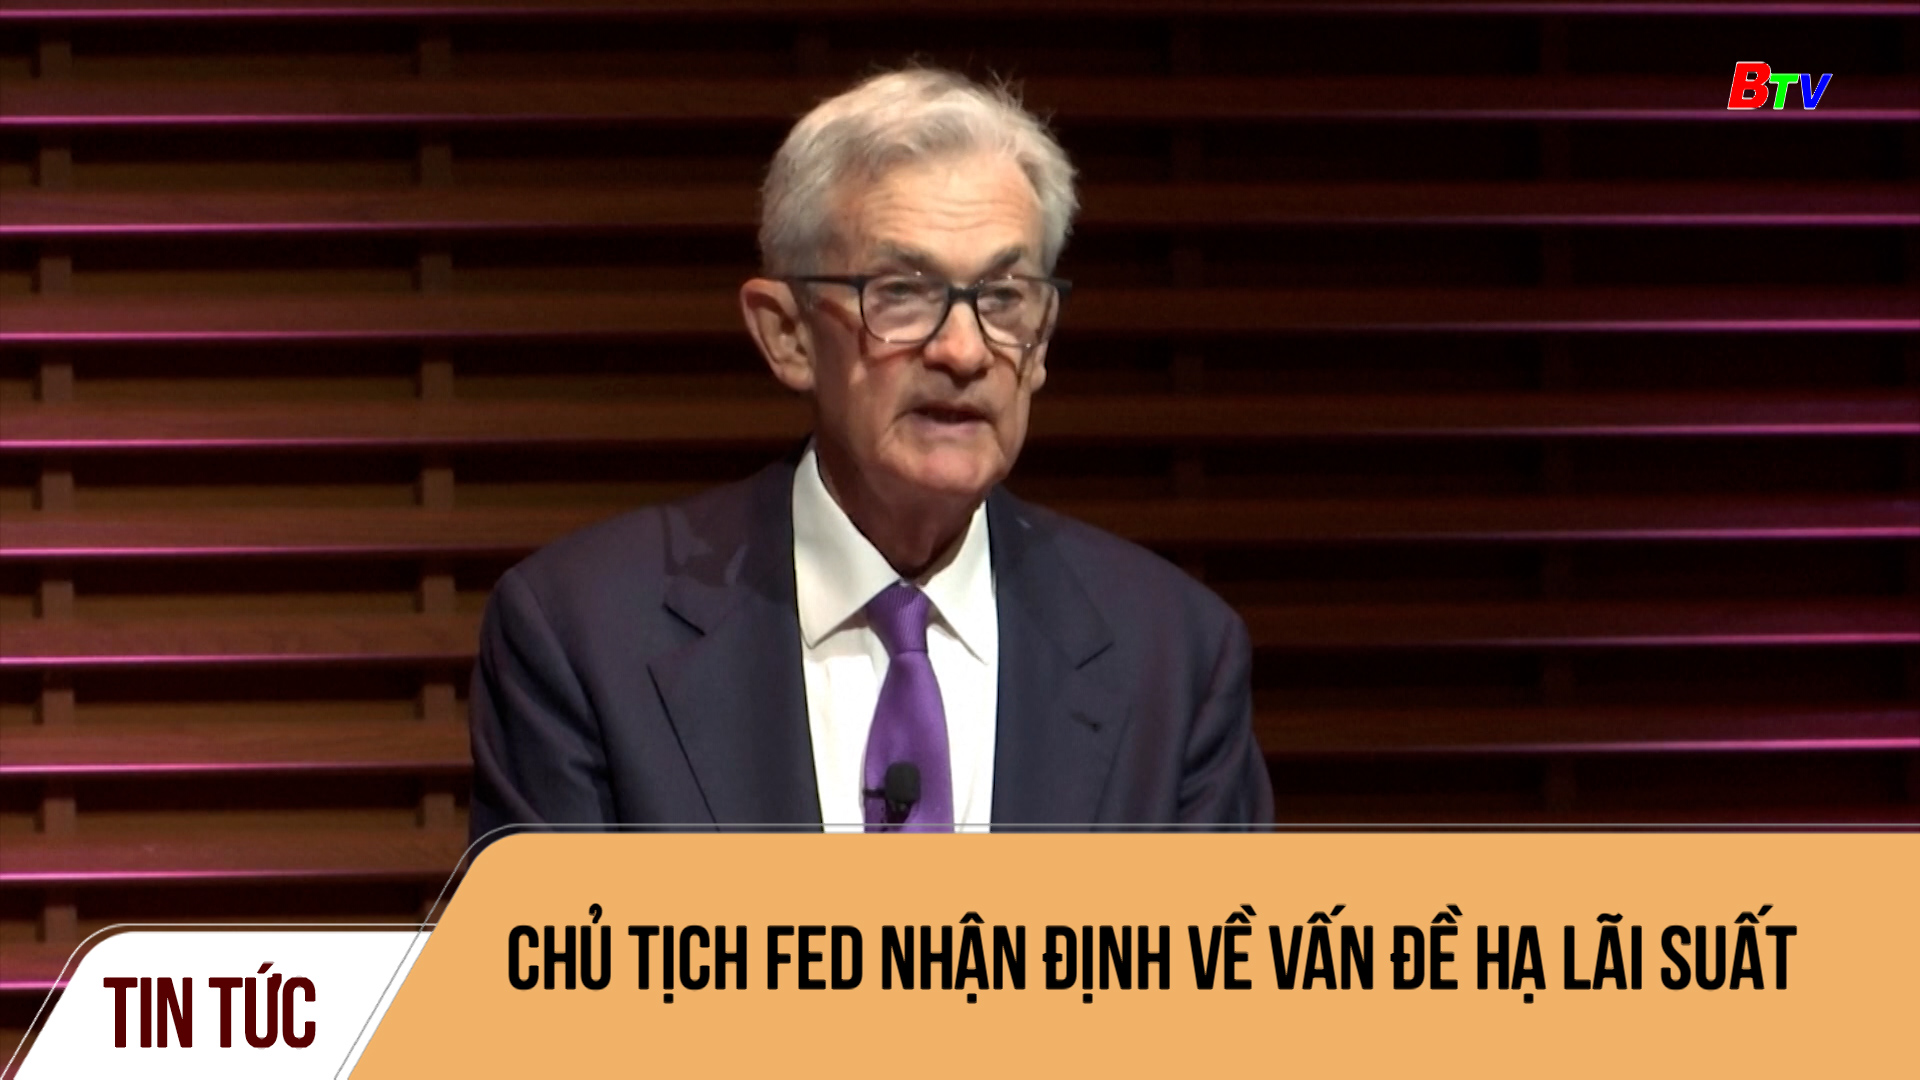 Chủ tịch Fed nhận định về vấn đề hạ lãi suất